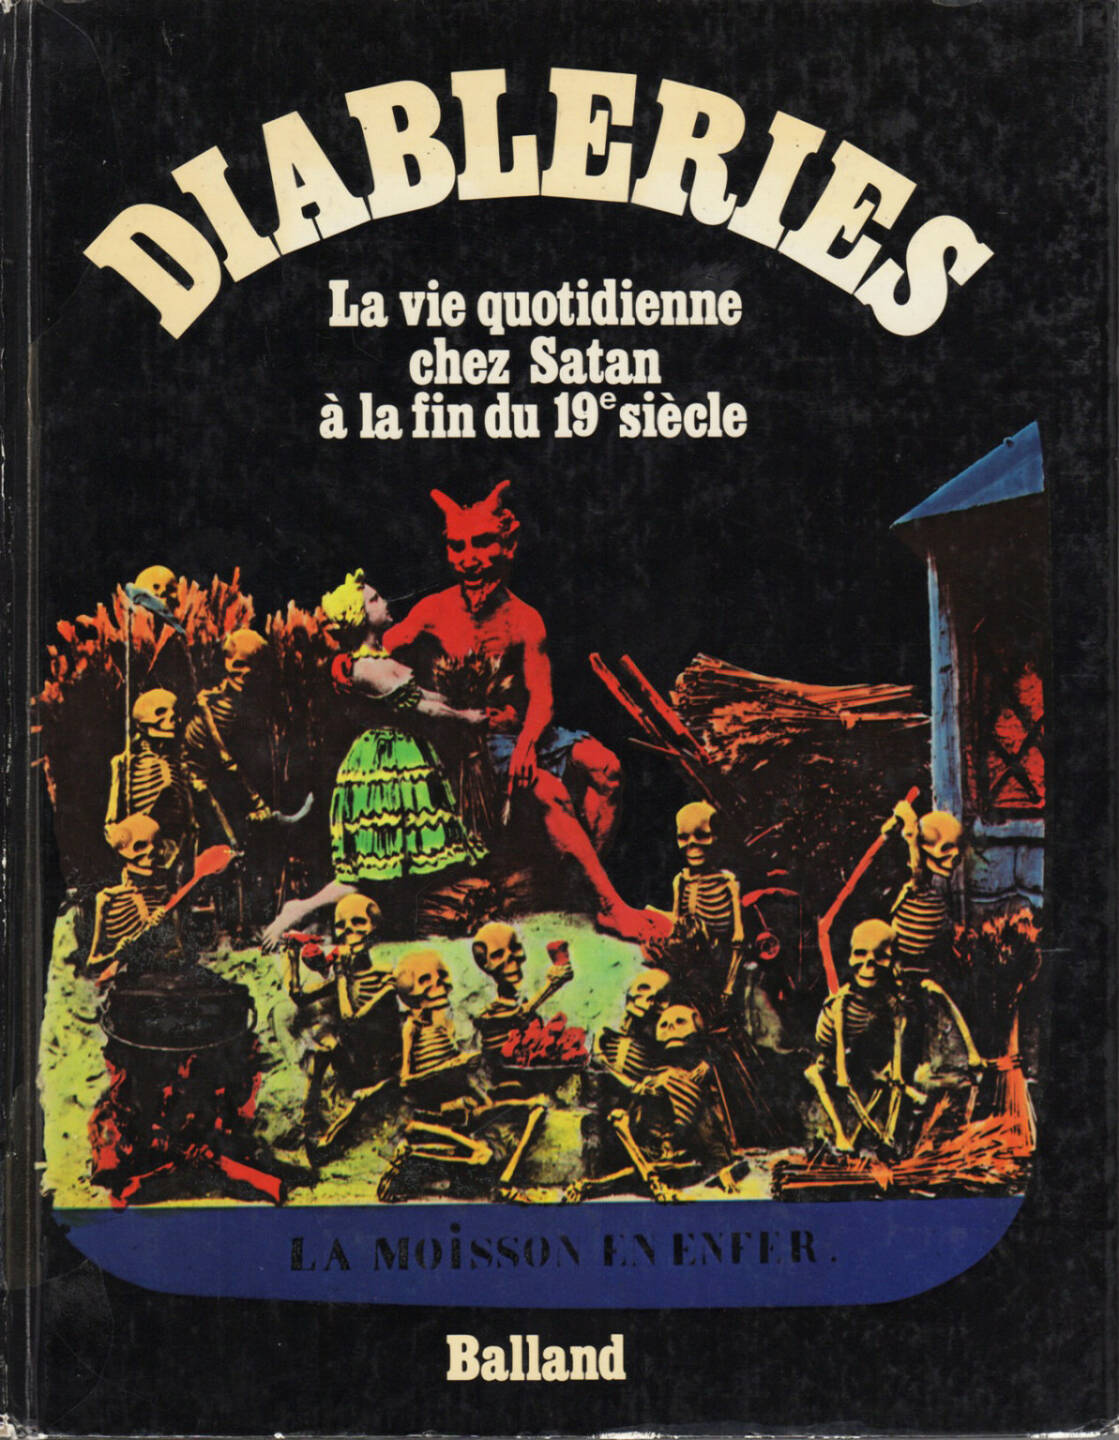 Jac Remise - Diableries : la vie quotidienne chez Satan à la fin du 19e siècle, Balland, 1978, Cover - http://josefchladek.com/book/jac_remise_-_diableries_la_vie_quotidienne_chez_satan_a_la_fin_du_19e_siecle